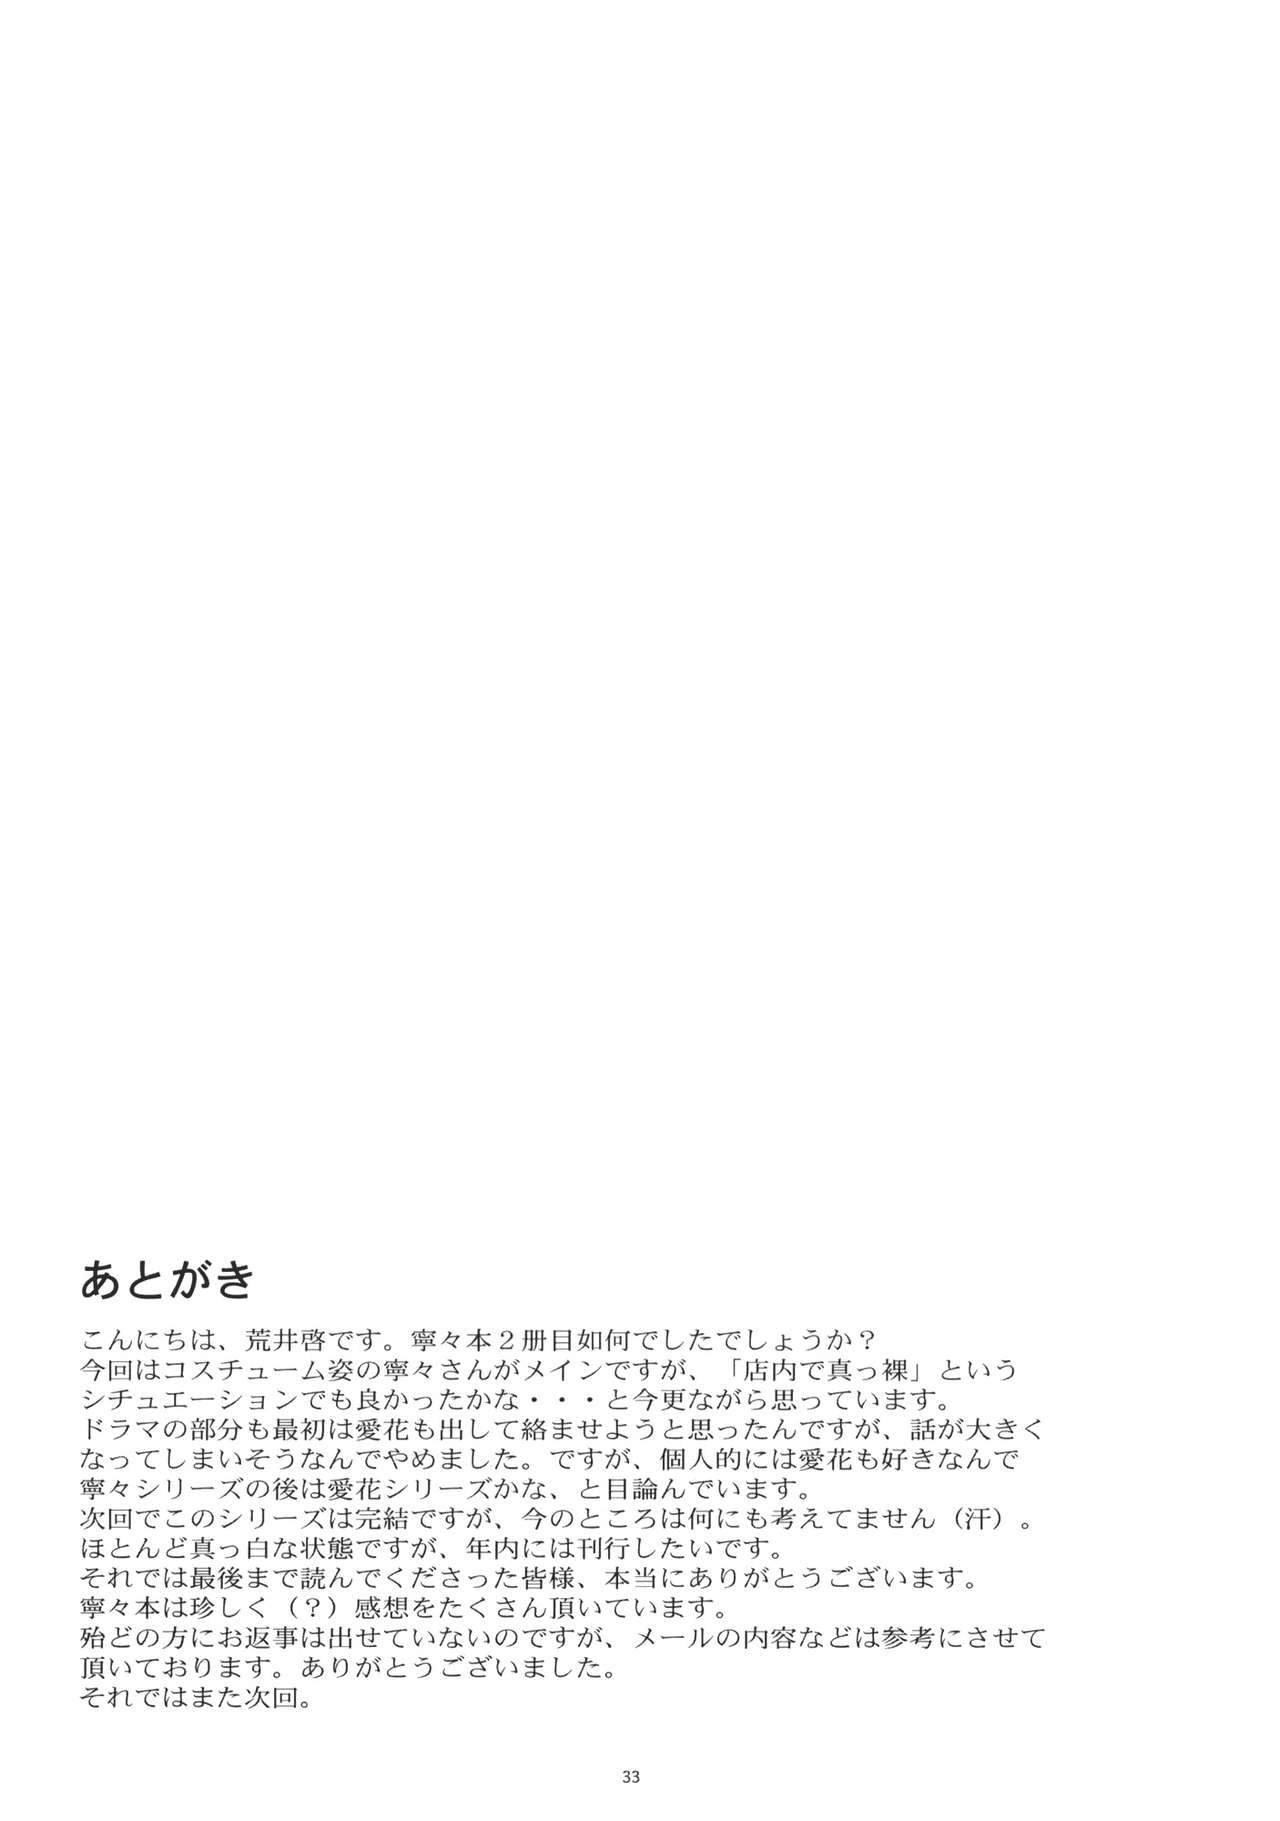 (COMIC1☆5) [Kansai Orange (Arai Kei)] Negative Love 2/3 (Love Plus) [Spanish] [DKl] (COMIC1☆5) [関西オレンジ (荒井啓)] Negative Love 2／3 (ラブプラス) [スペイン翻訳]